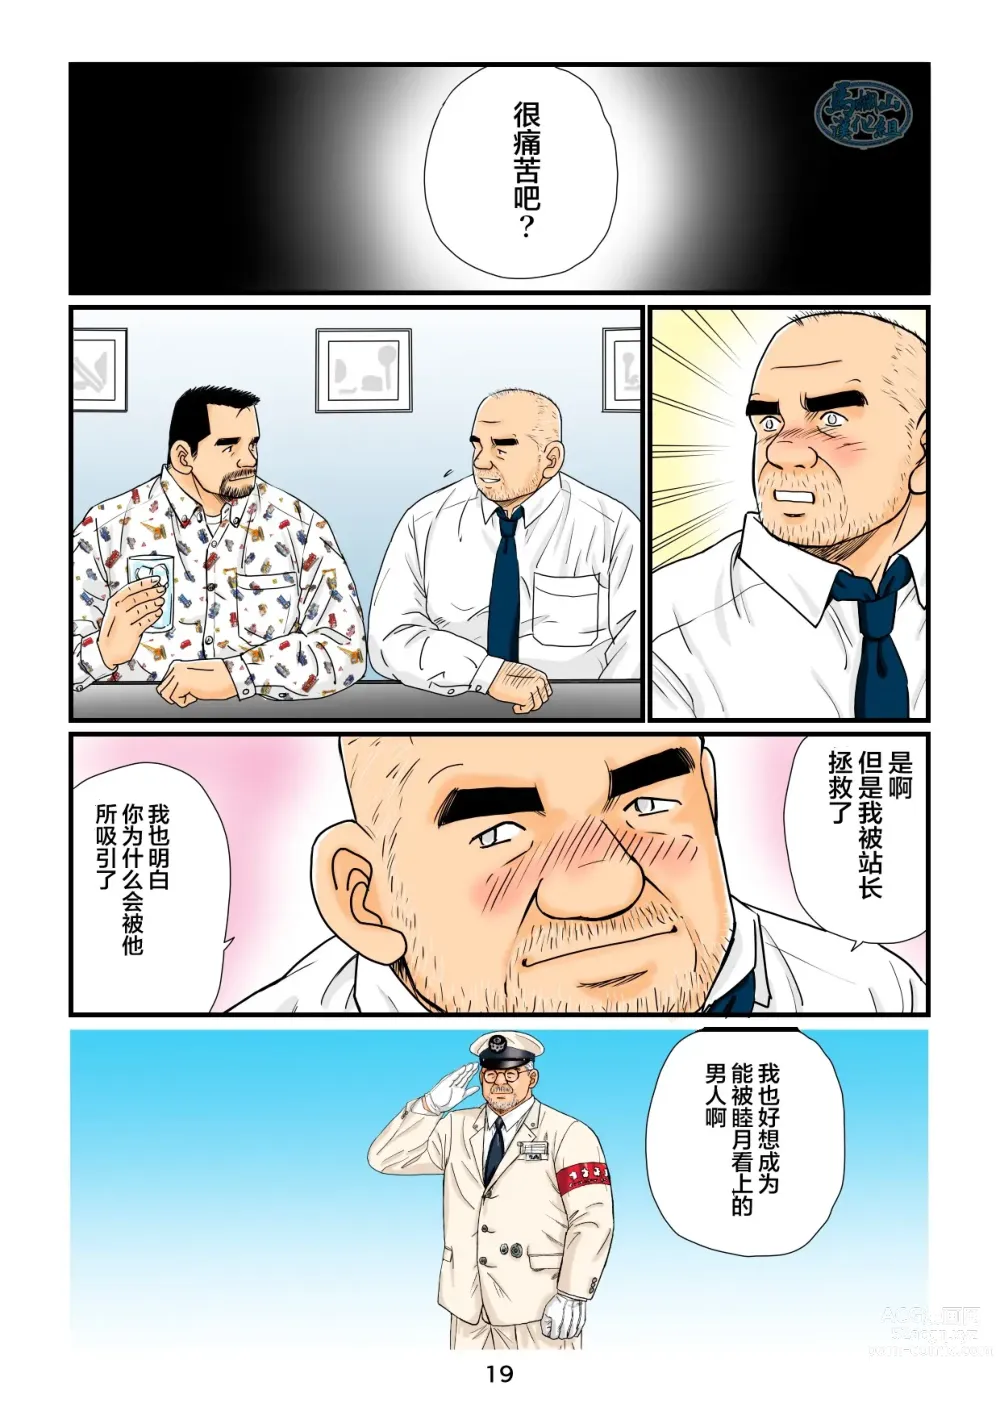 Page 19 of manga 「铁道员的浪漫」 第四回 站长和铁道员的前路